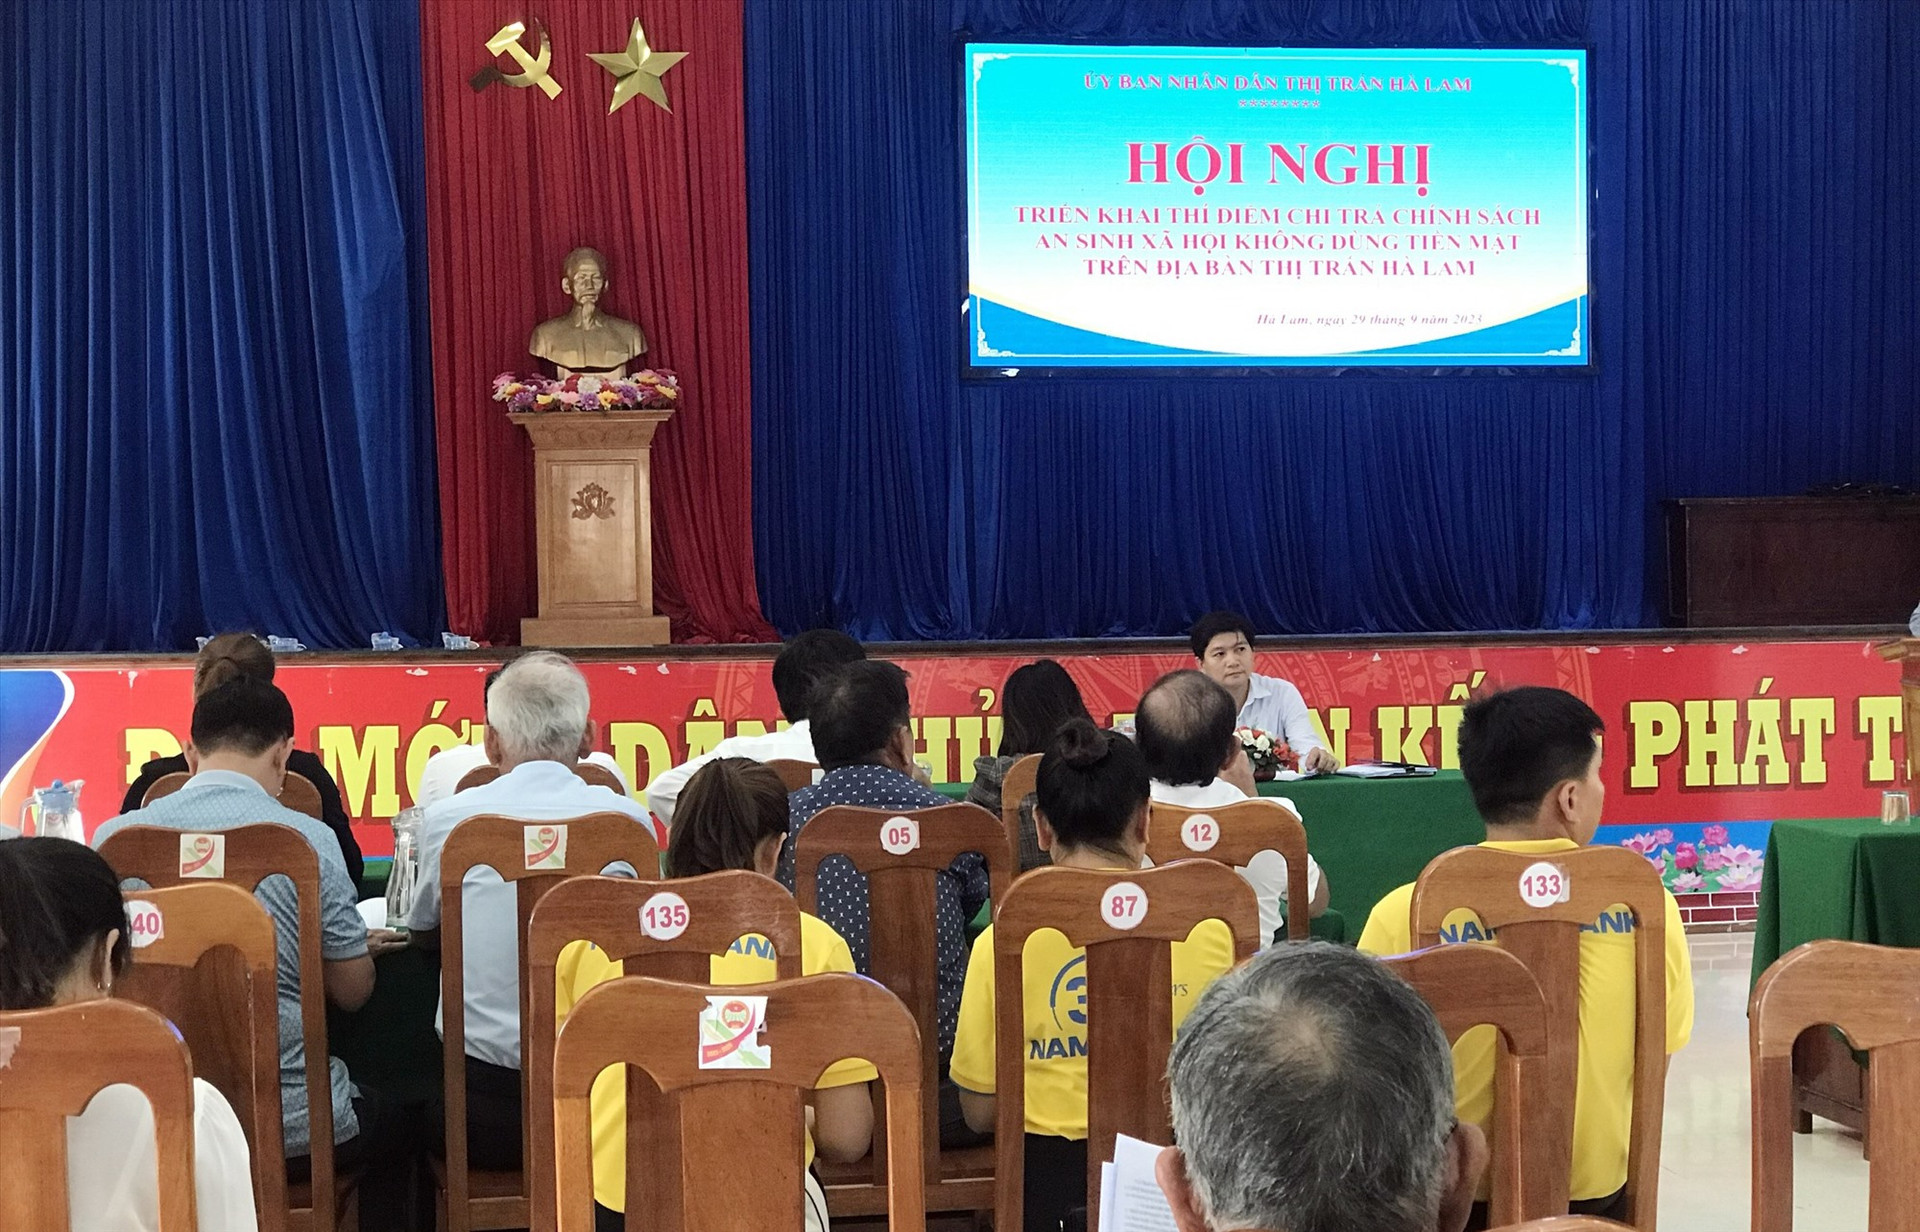 Hội nghị triển khai phương án thí điểm chi trả chính sách ASXH không dùng tiền mặt tại thị trấn Hà Lam. (Ảnh T-N)